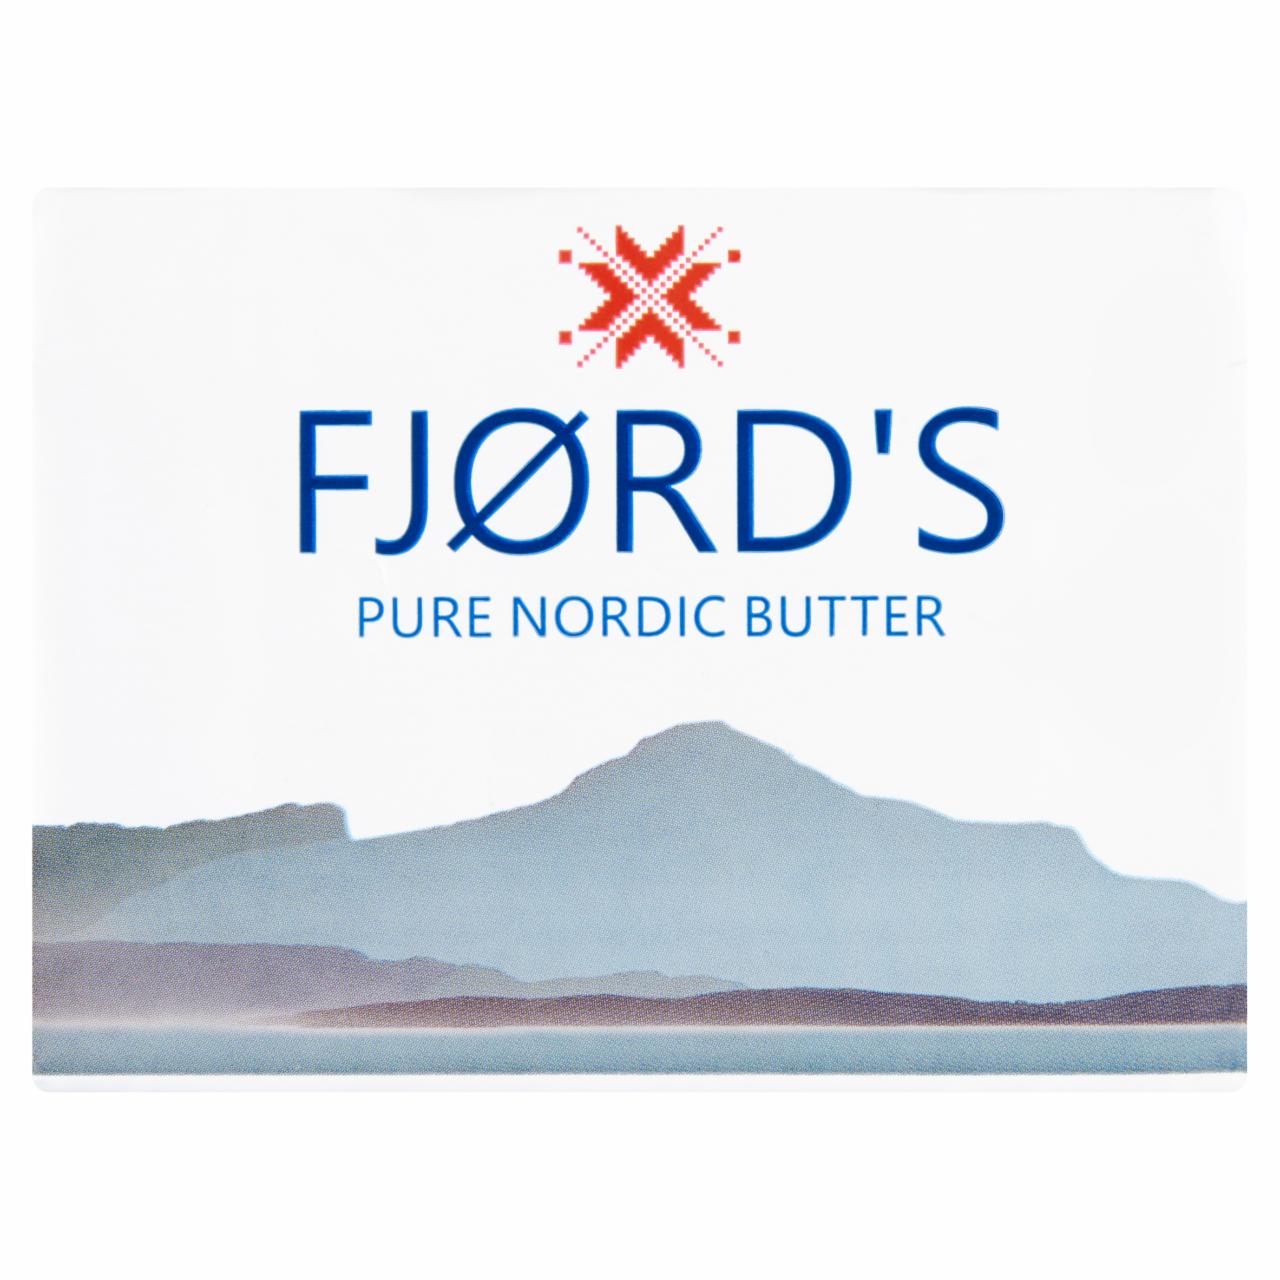 Képek - Fjørd's márkázott vaj 180 g